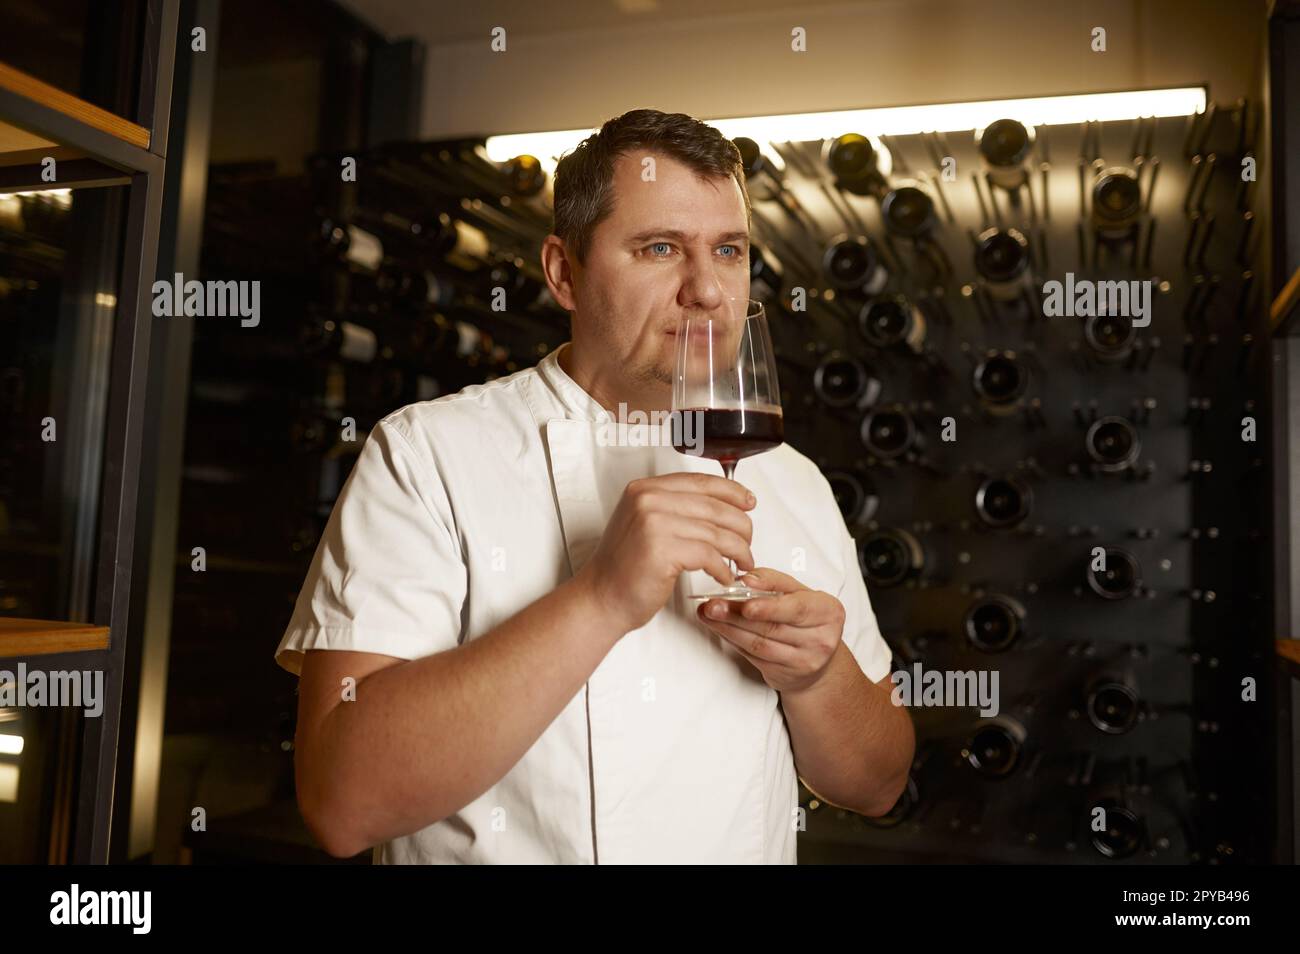 Sommelier-duftender Wein in transparentem Glas zur Qualitätskontrolle Stockfoto